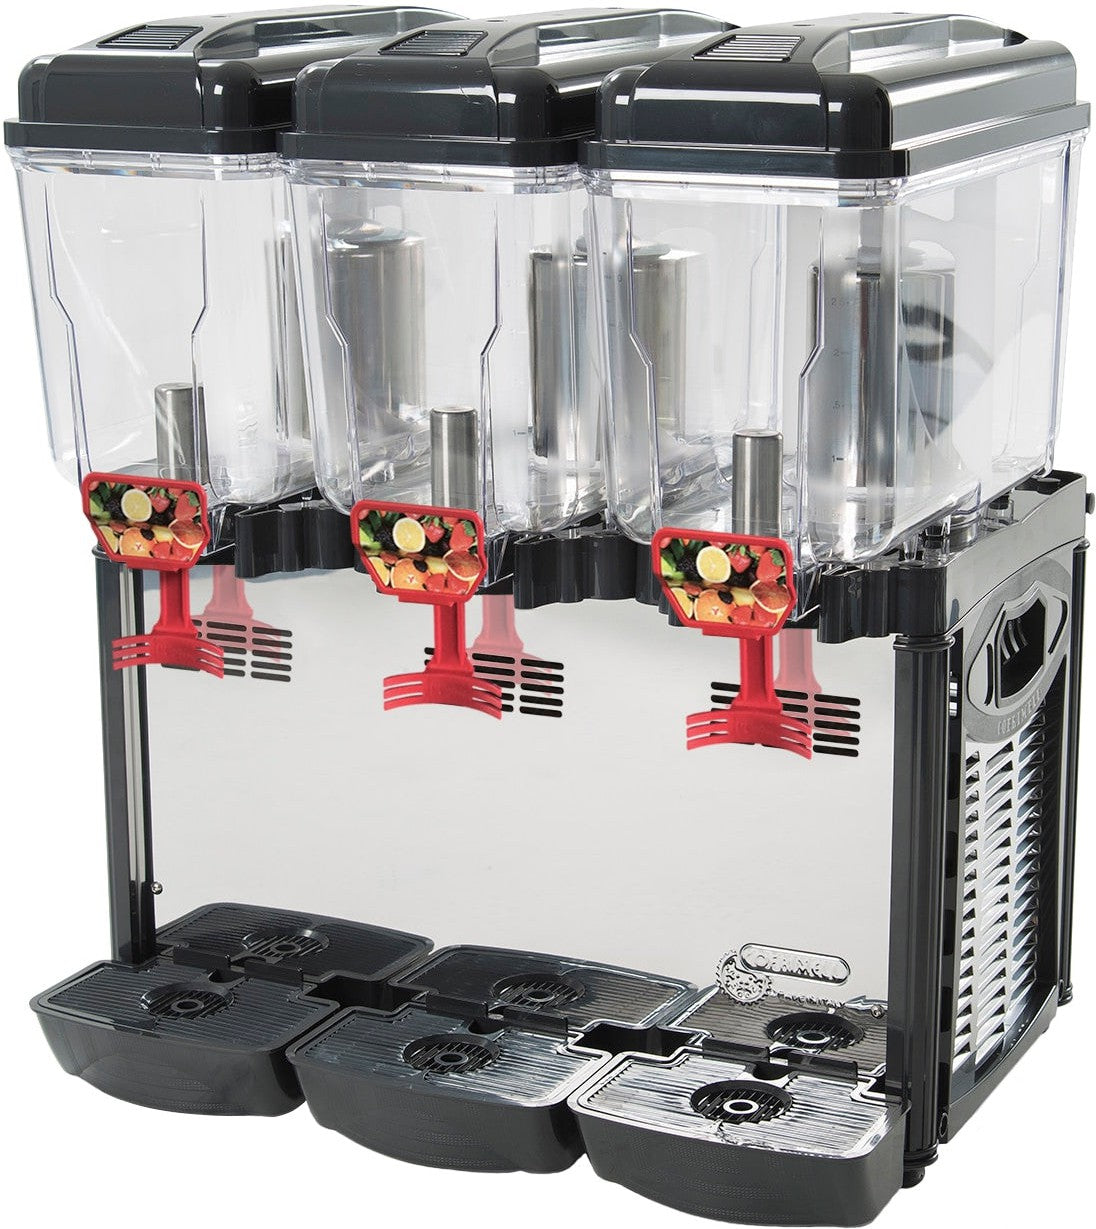 Cofrimell - 220V Pre-Mix Drink Beverage Dispenser with 3 Tanks - CD3J 220